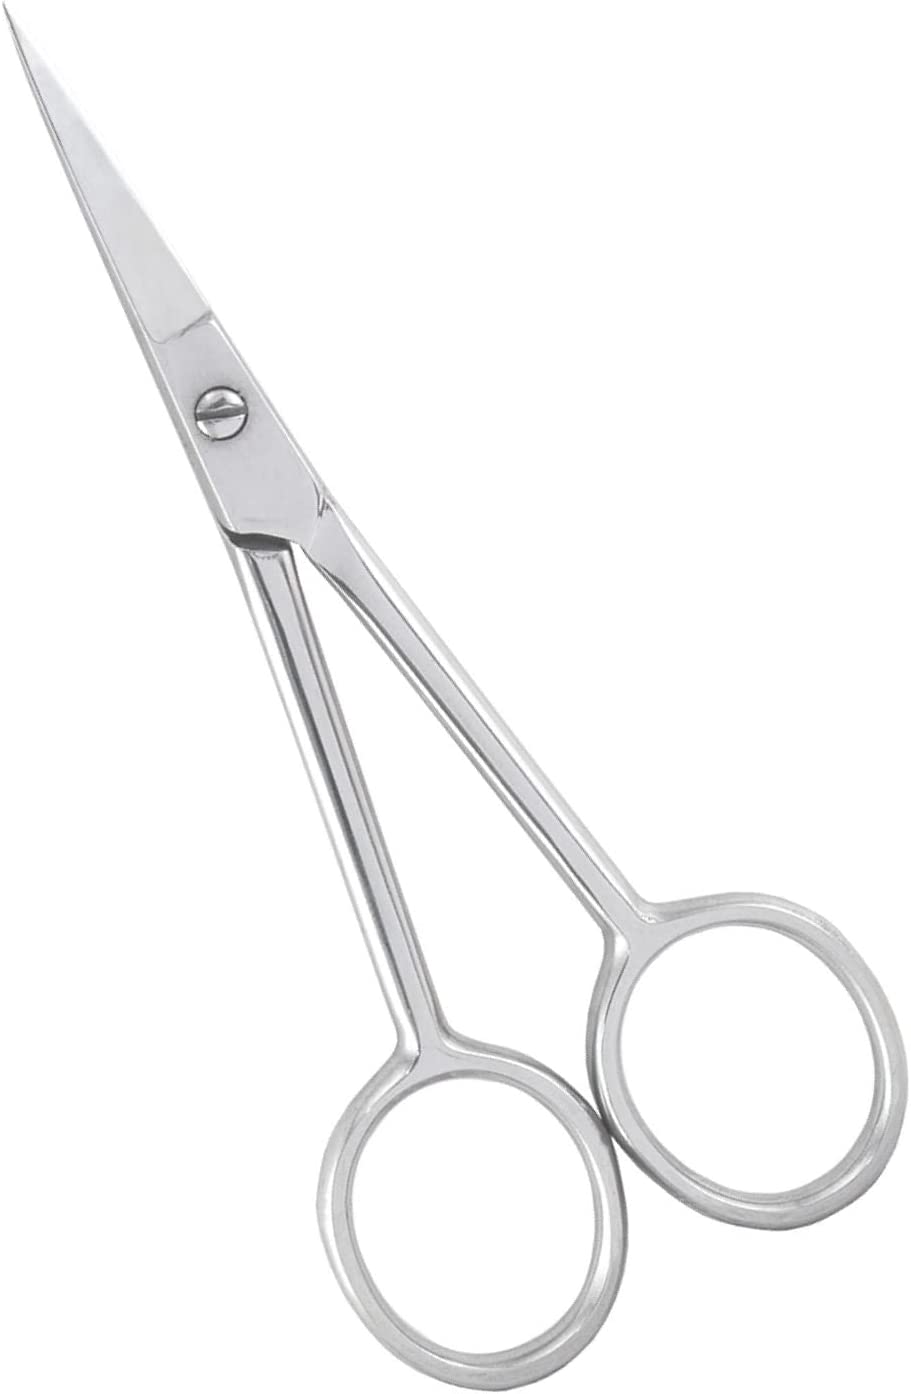 TM-30 Accurate Scissors 110mm [Straight]